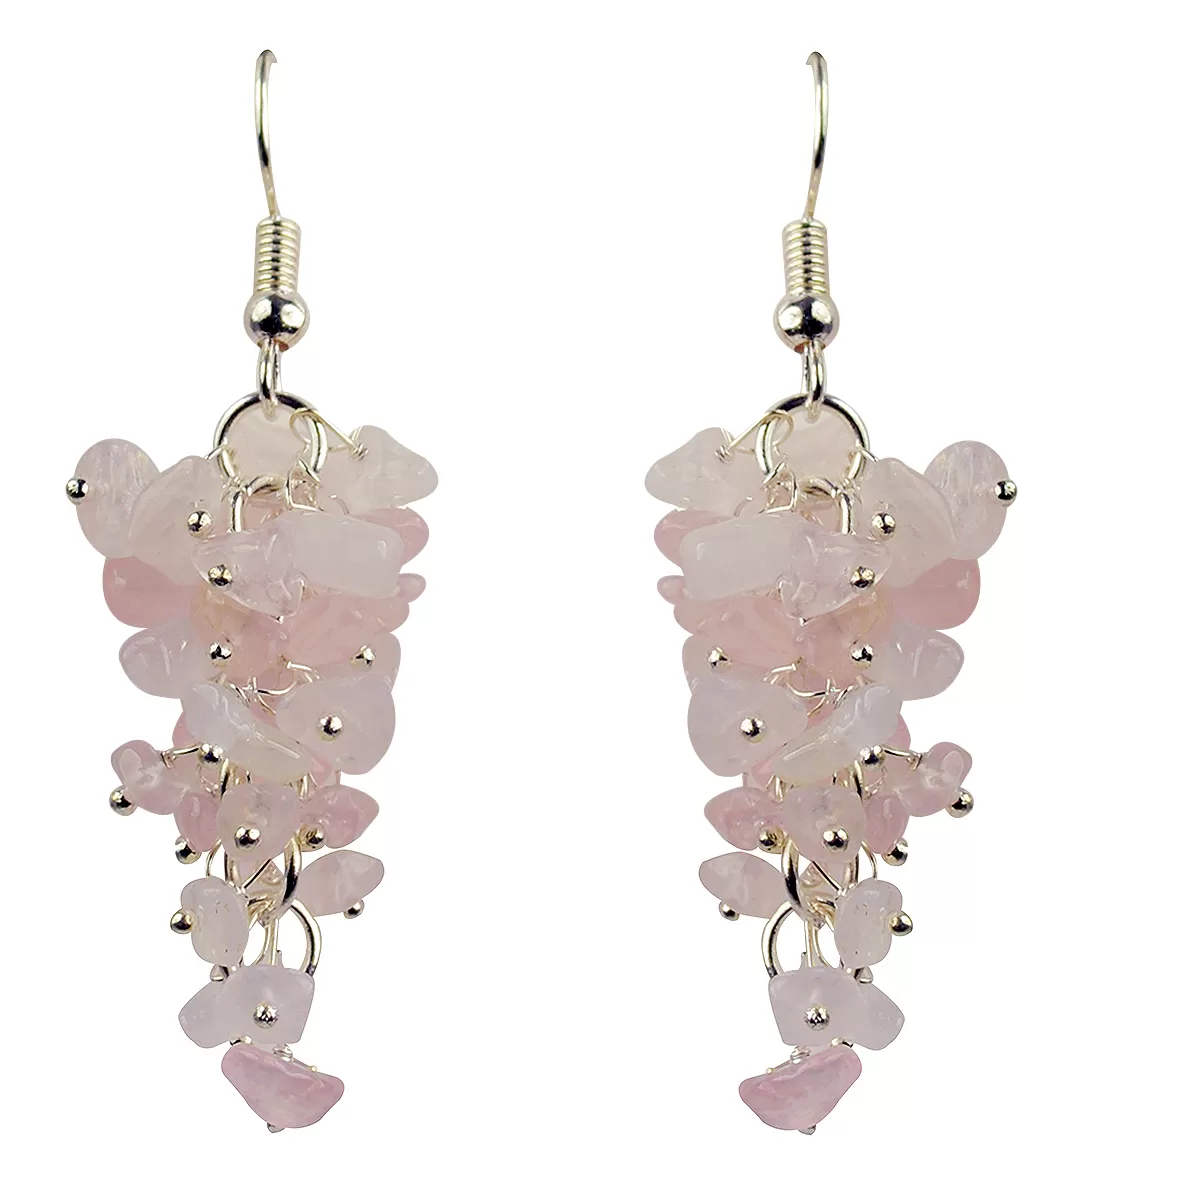 Rose Quartz Earrings Natural Chip Beads Earrings for Women, Girls Pink